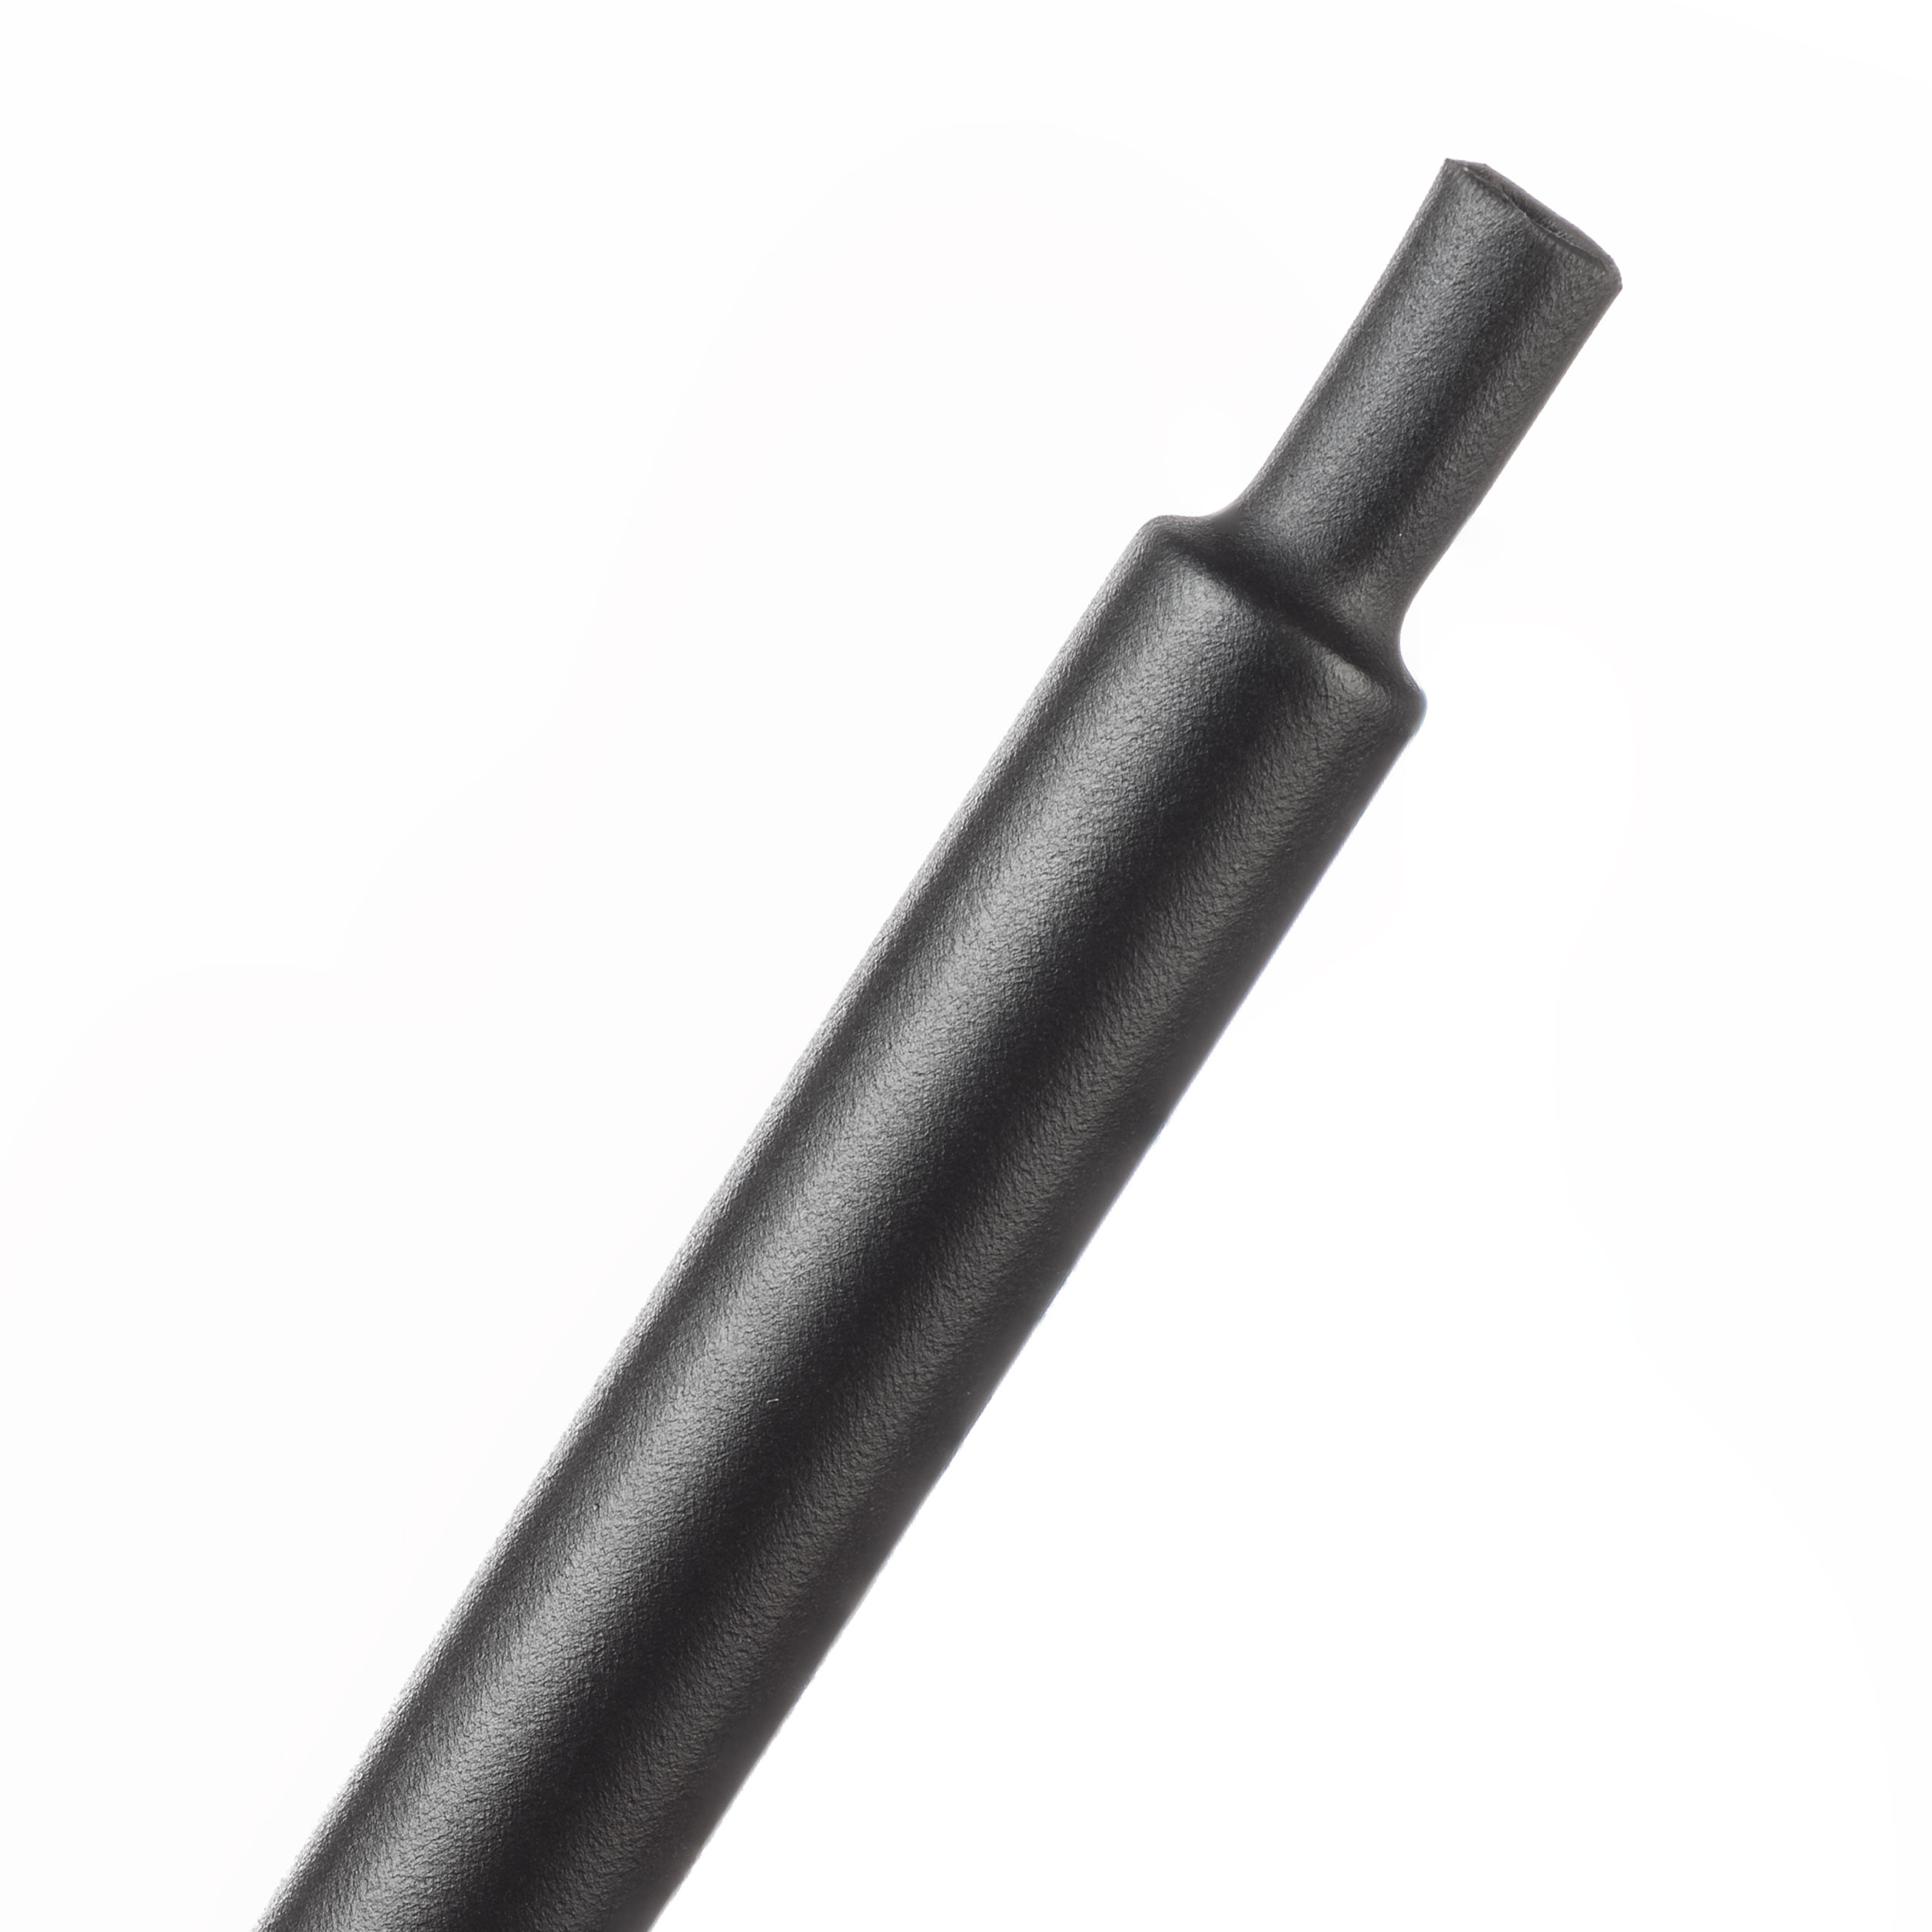 Gaine Shrinkflex® 2:1 Viton - Ø 3.2 mm - Bobine de 7.62 m